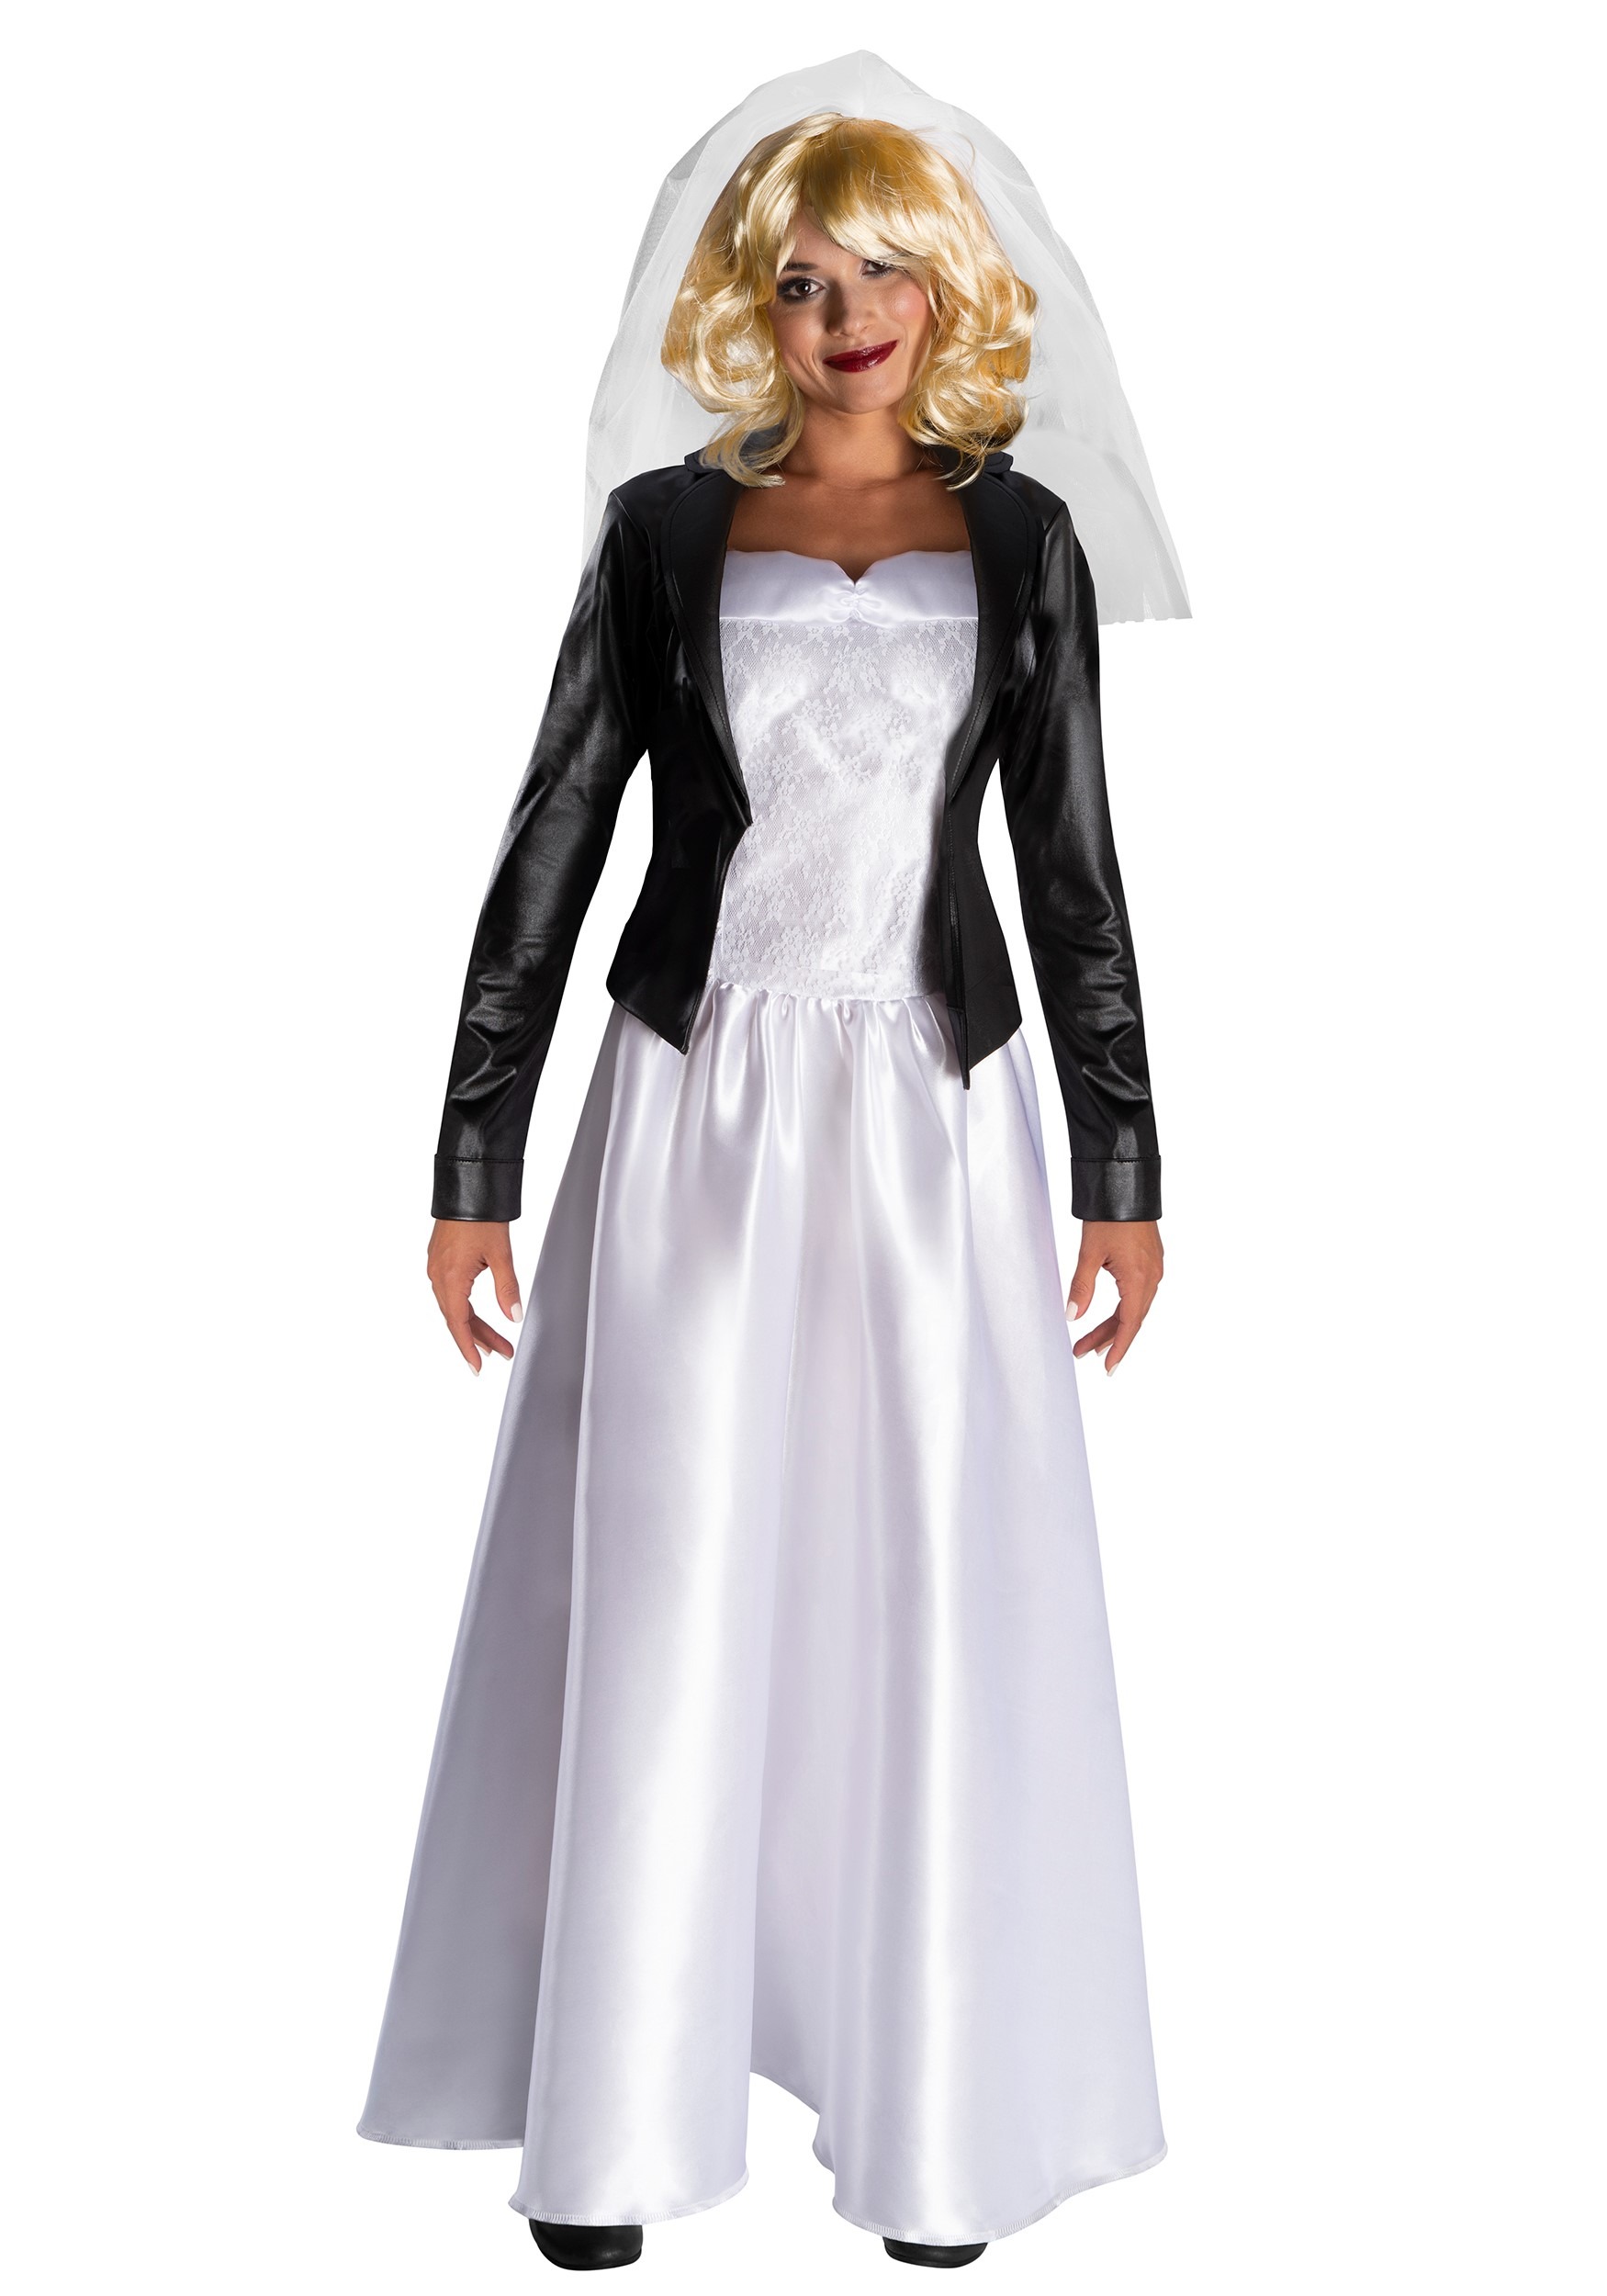 Bride Of Chucky Women's Fancy Dress Costume